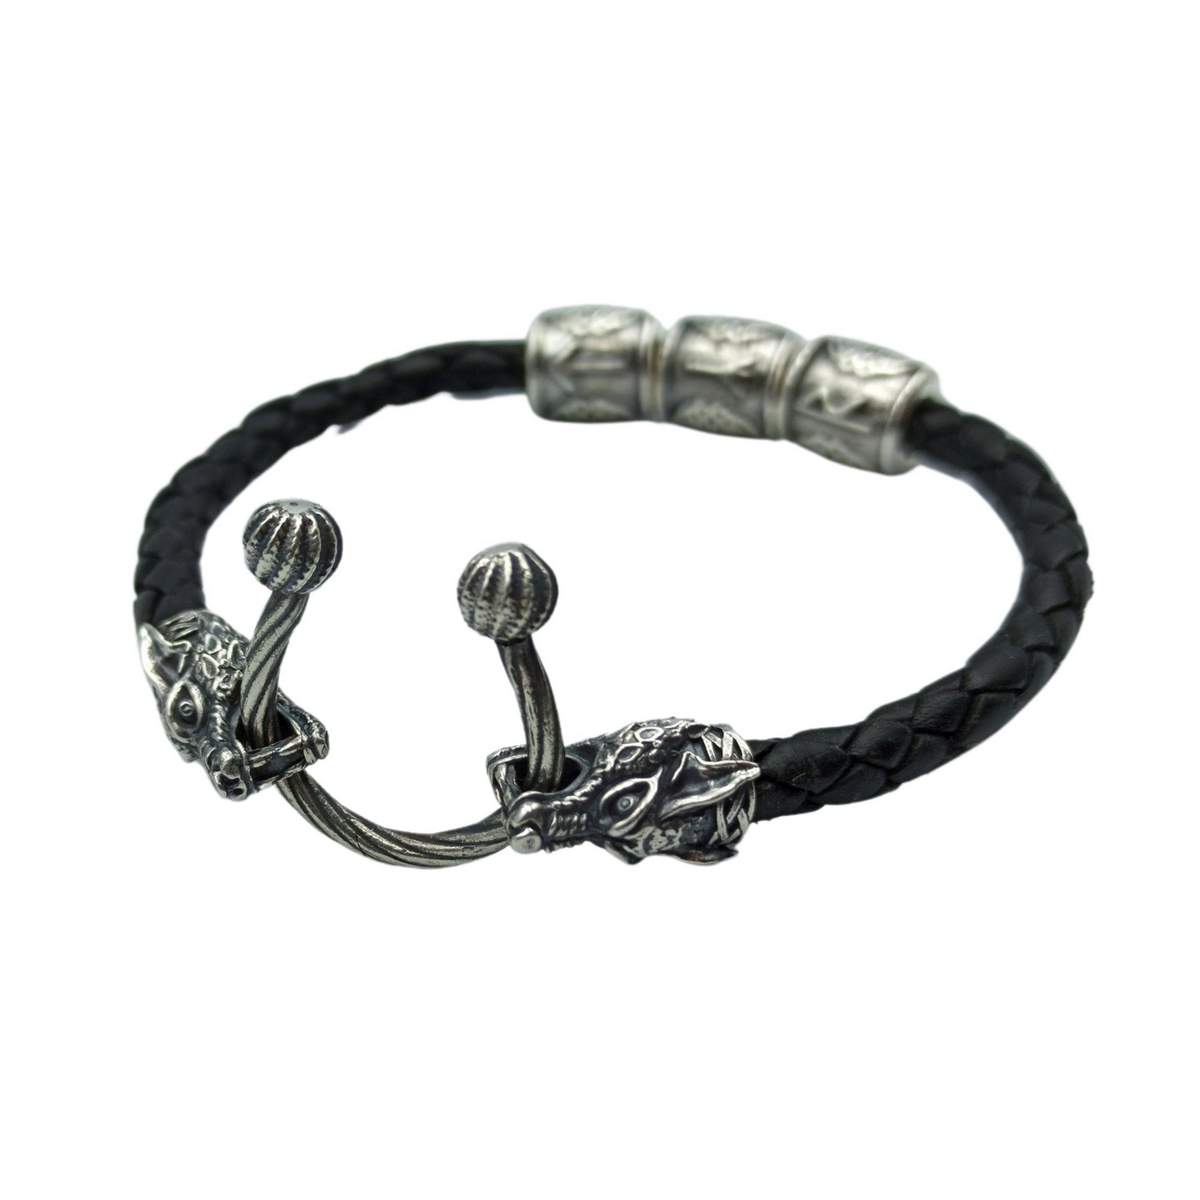 Tyr wolf leather bracelet